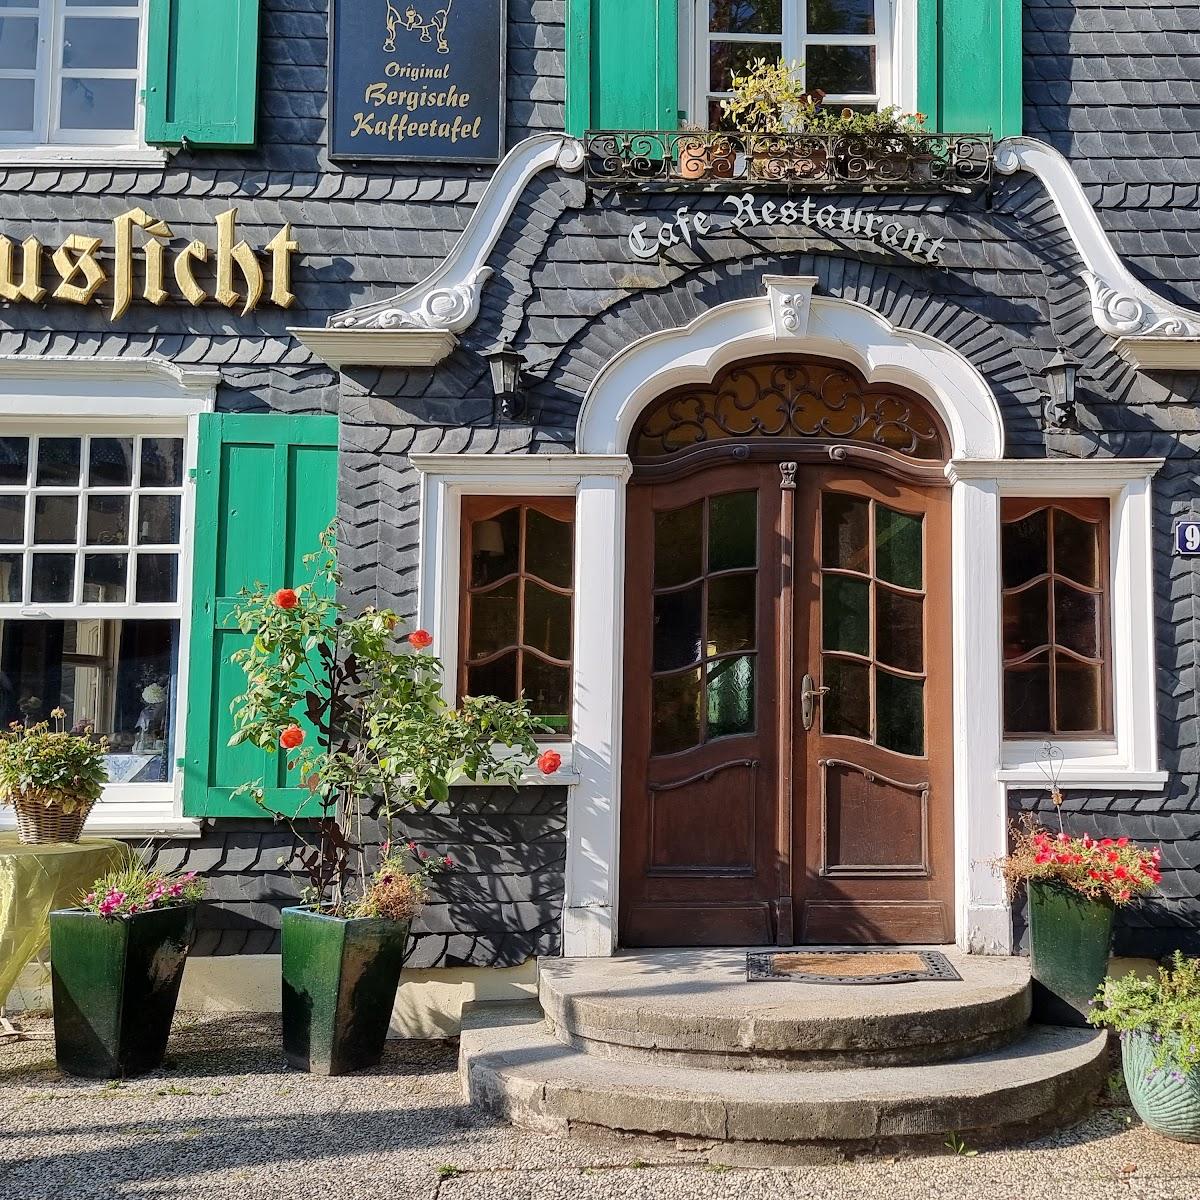 Restaurant "Zur schönen Aussicht - Vera Jäger" in Solingen